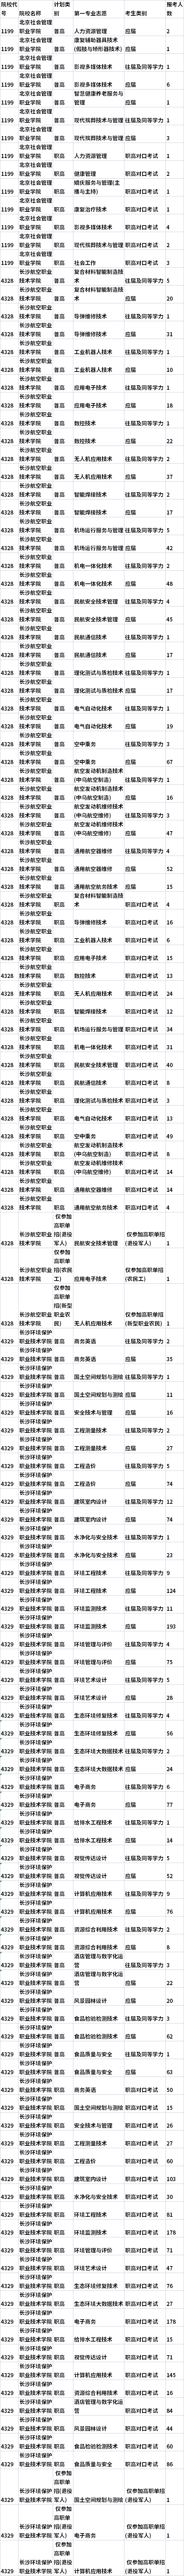 2022年湖南高职单招各院校专业报名情况统计表